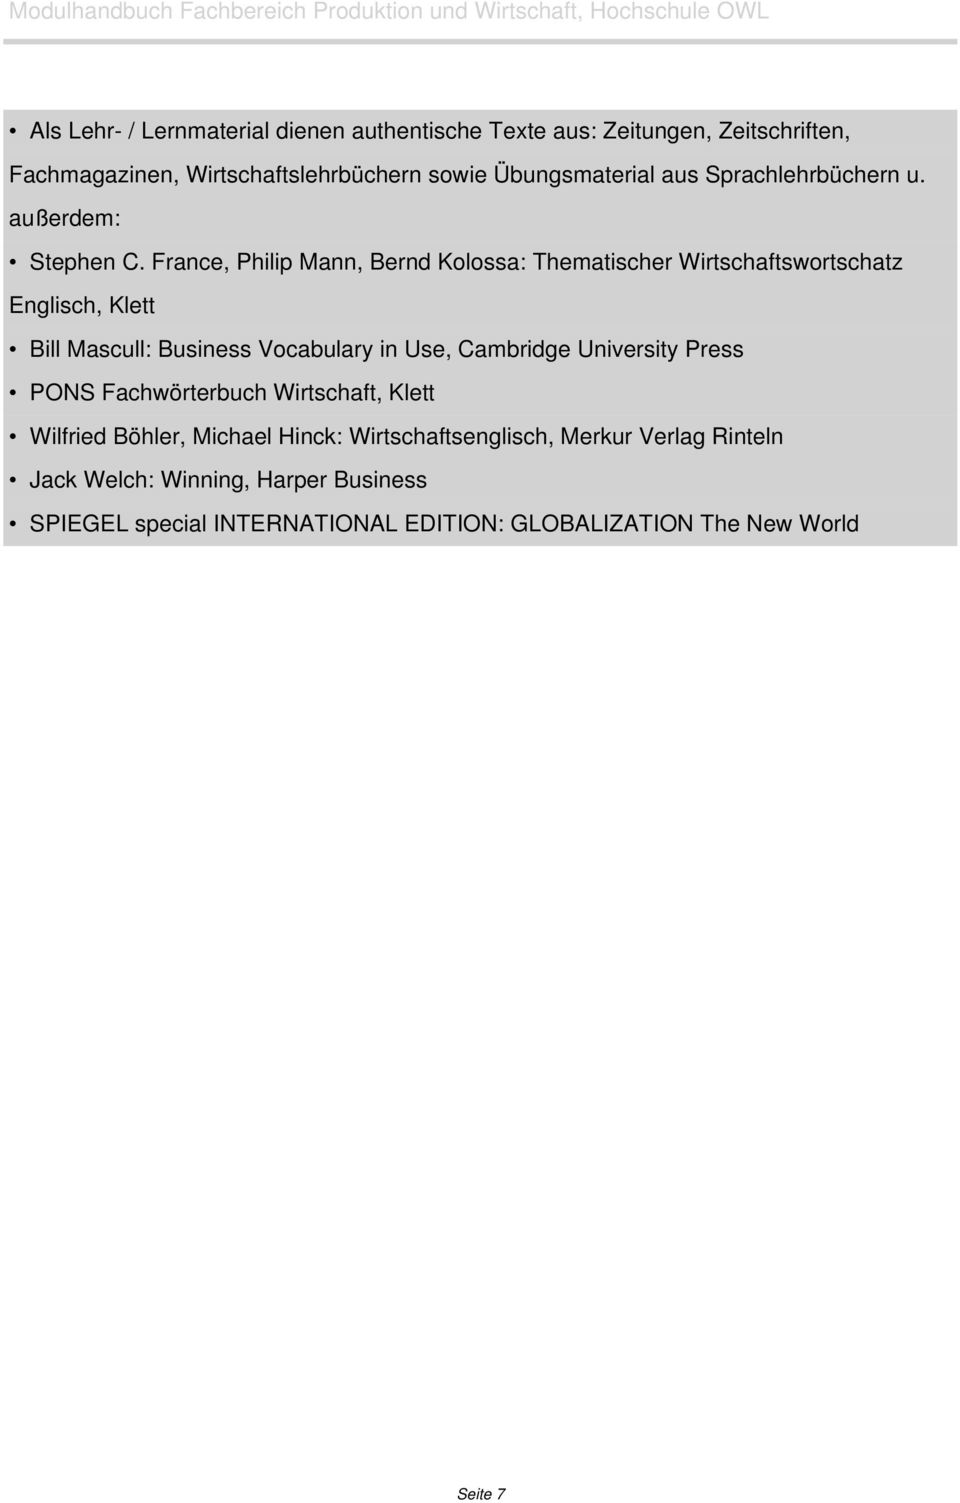 France, Philip Mann, Bernd Kolossa: Thematischer Wirtschaftswortschatz Englisch, Klett Bill Mascull: Business Vocabulary in Use, Cambridge